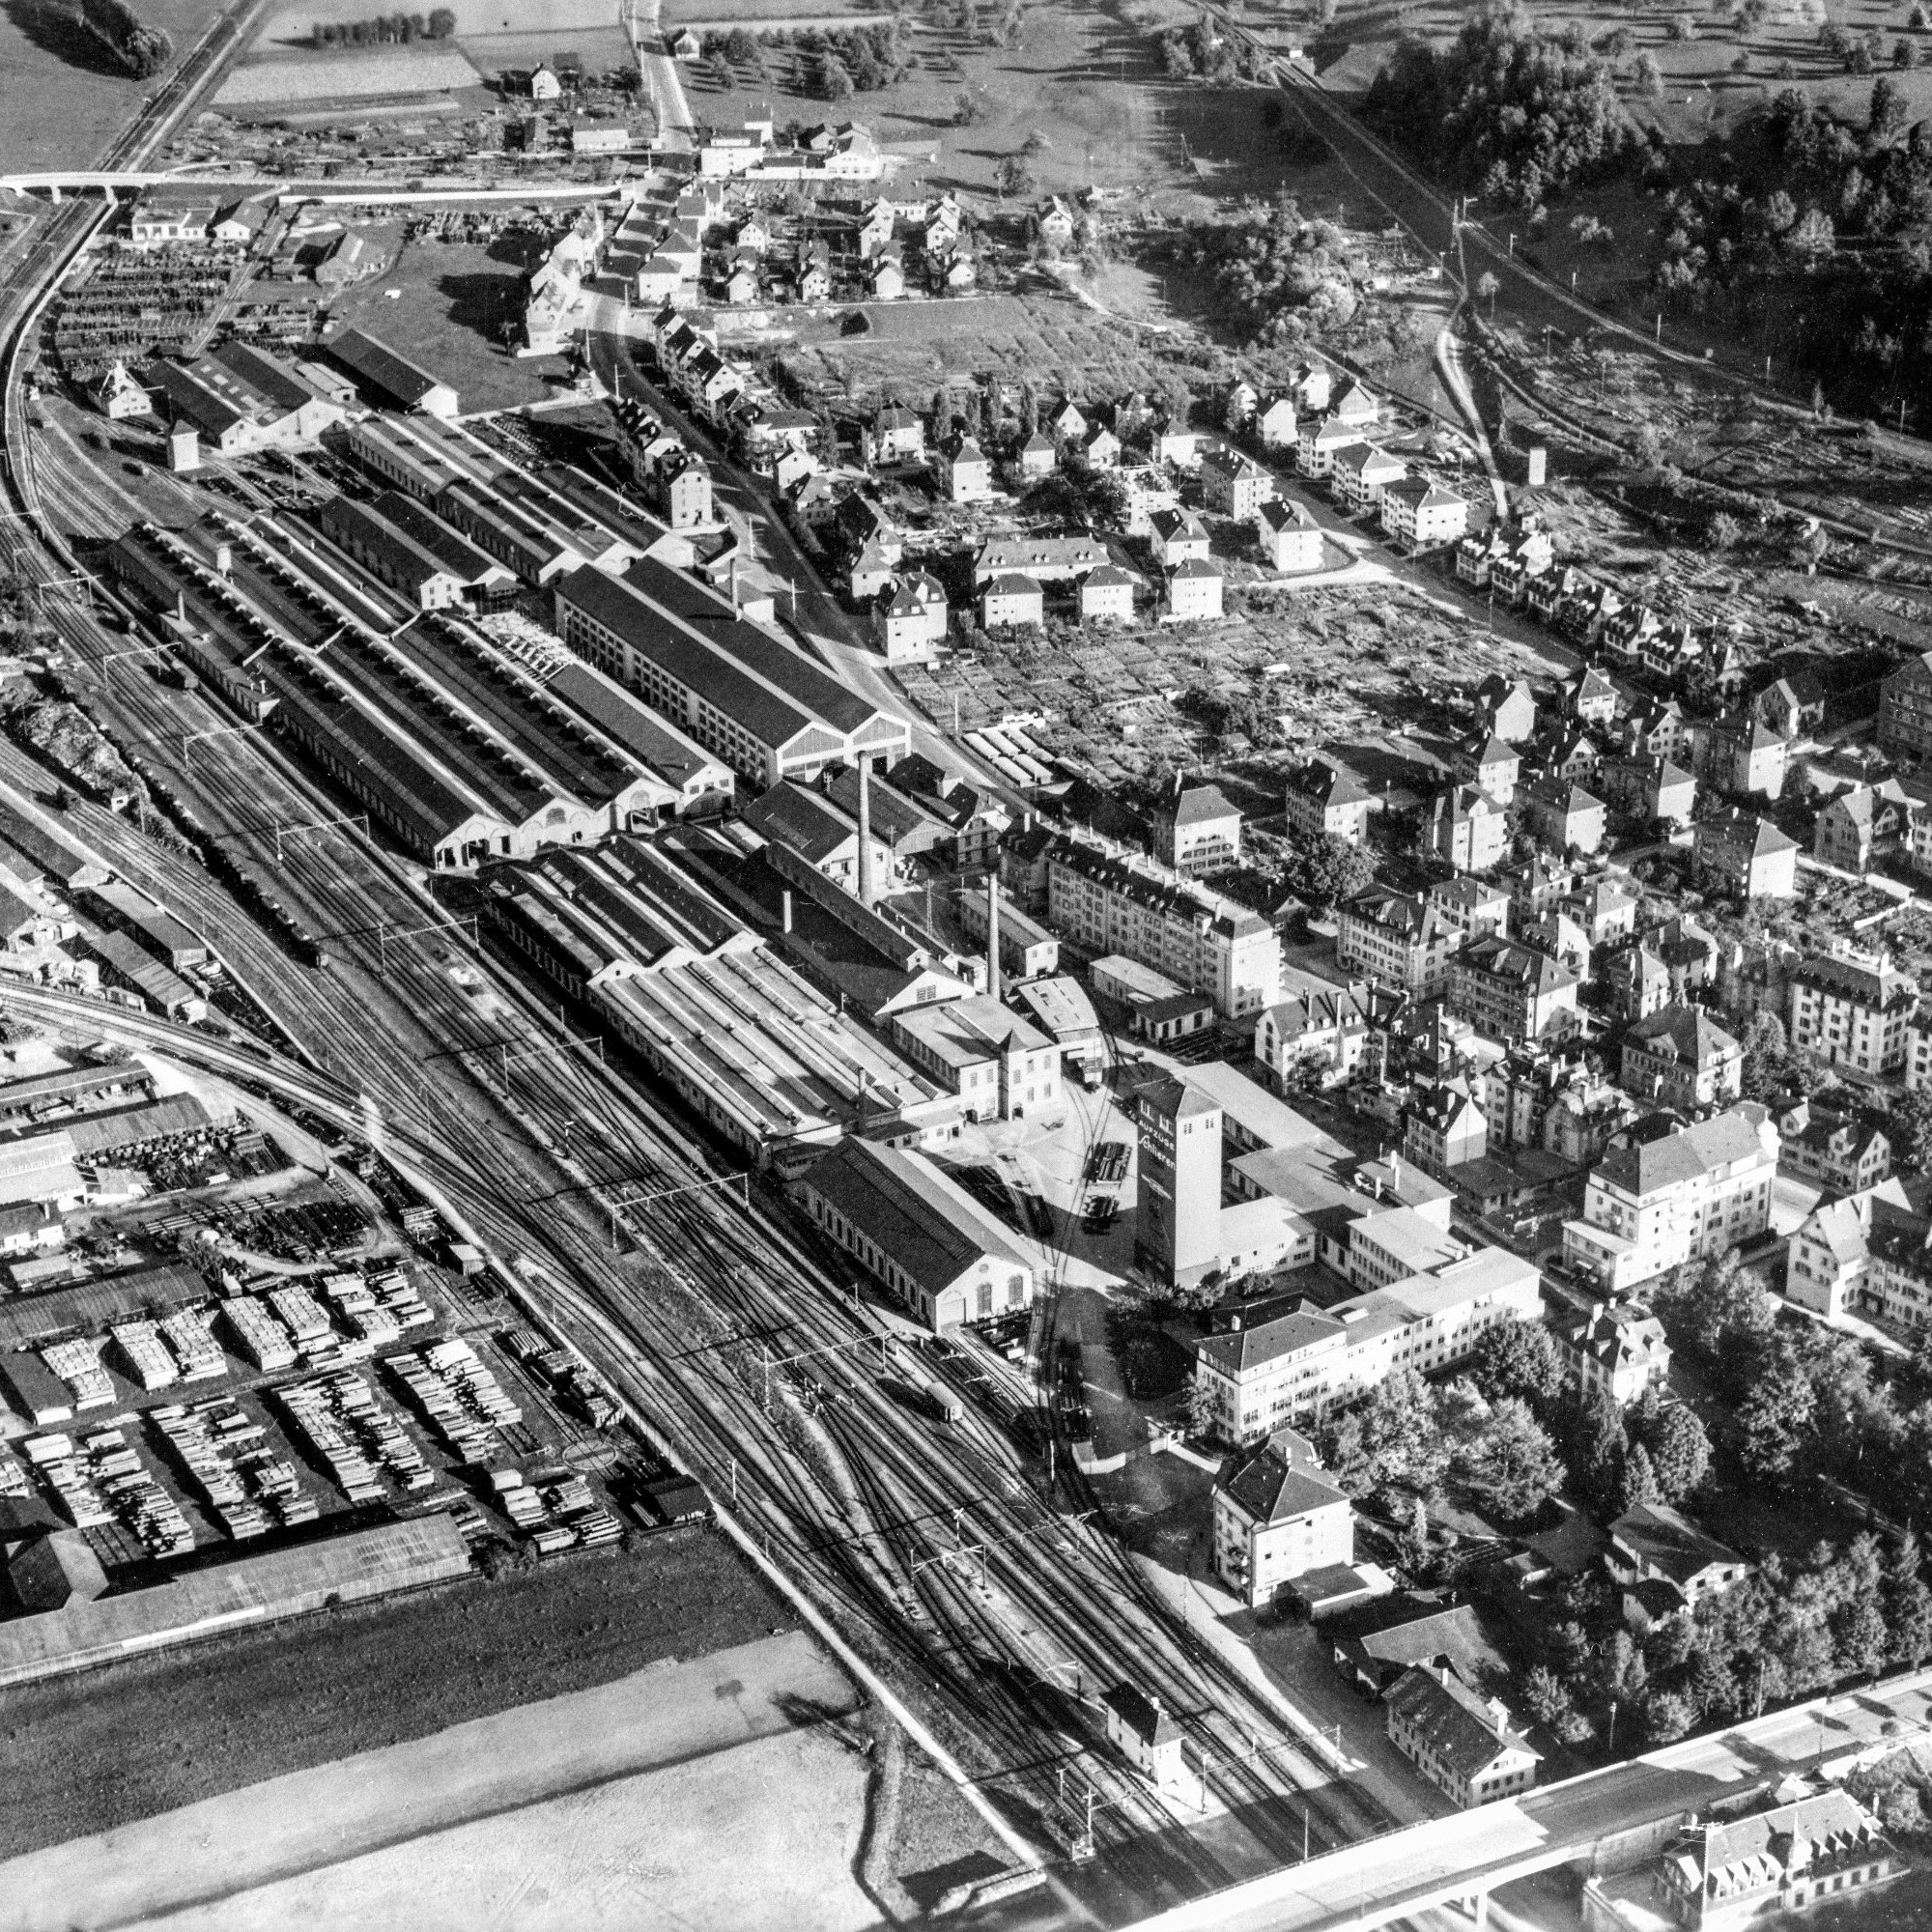 Industriegeschichte: Die Schweizerische Wagons- und Aufzügefabrik im Jahr 1947.